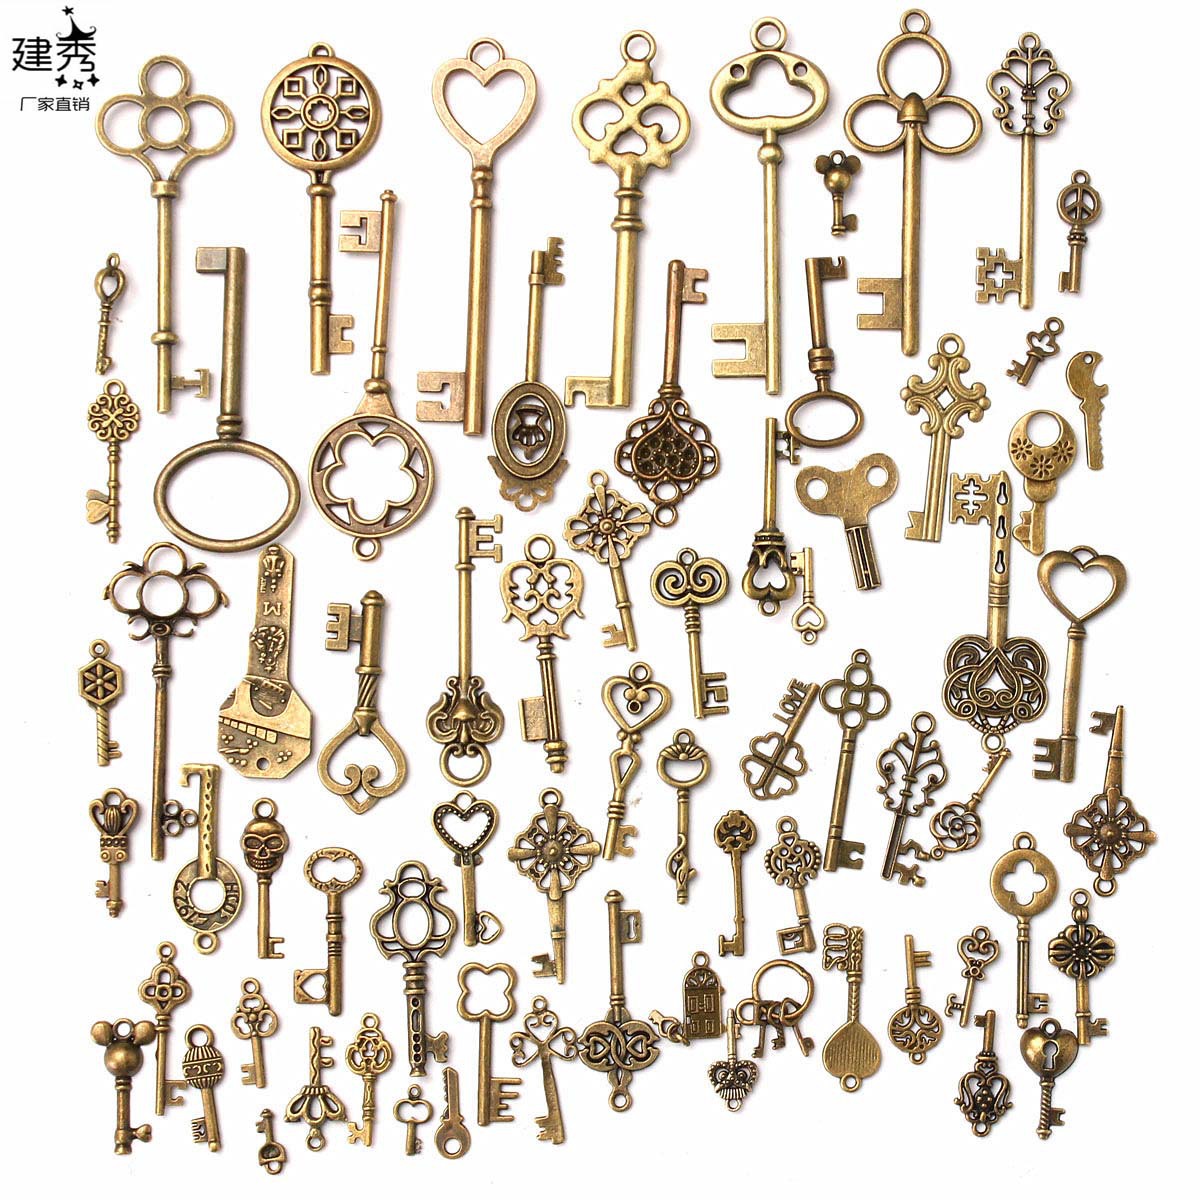 古代钥匙锁金锁详情 - 橙娘素材铺 - 橙光|66RPG